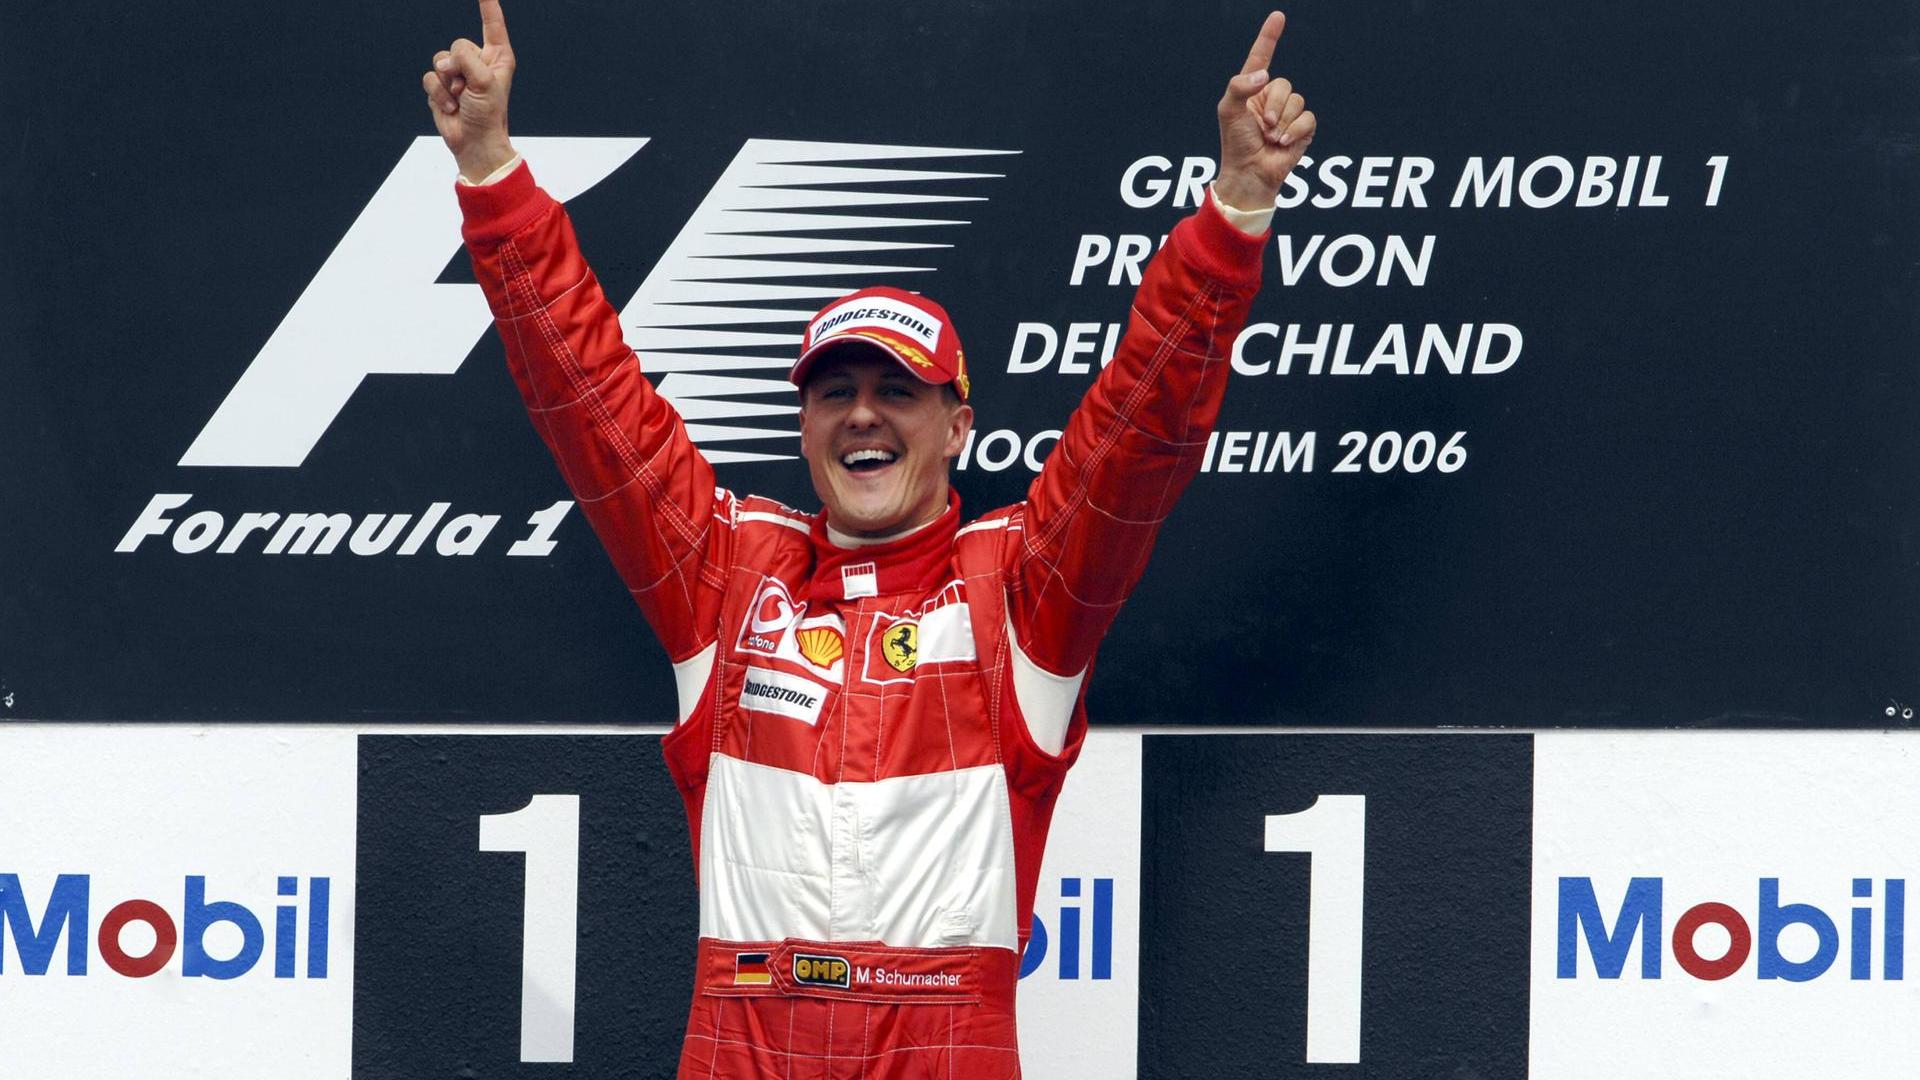 RECENZE: Dokument Schumacher připomíná úspěšnou kariéru jezdce Formule 1